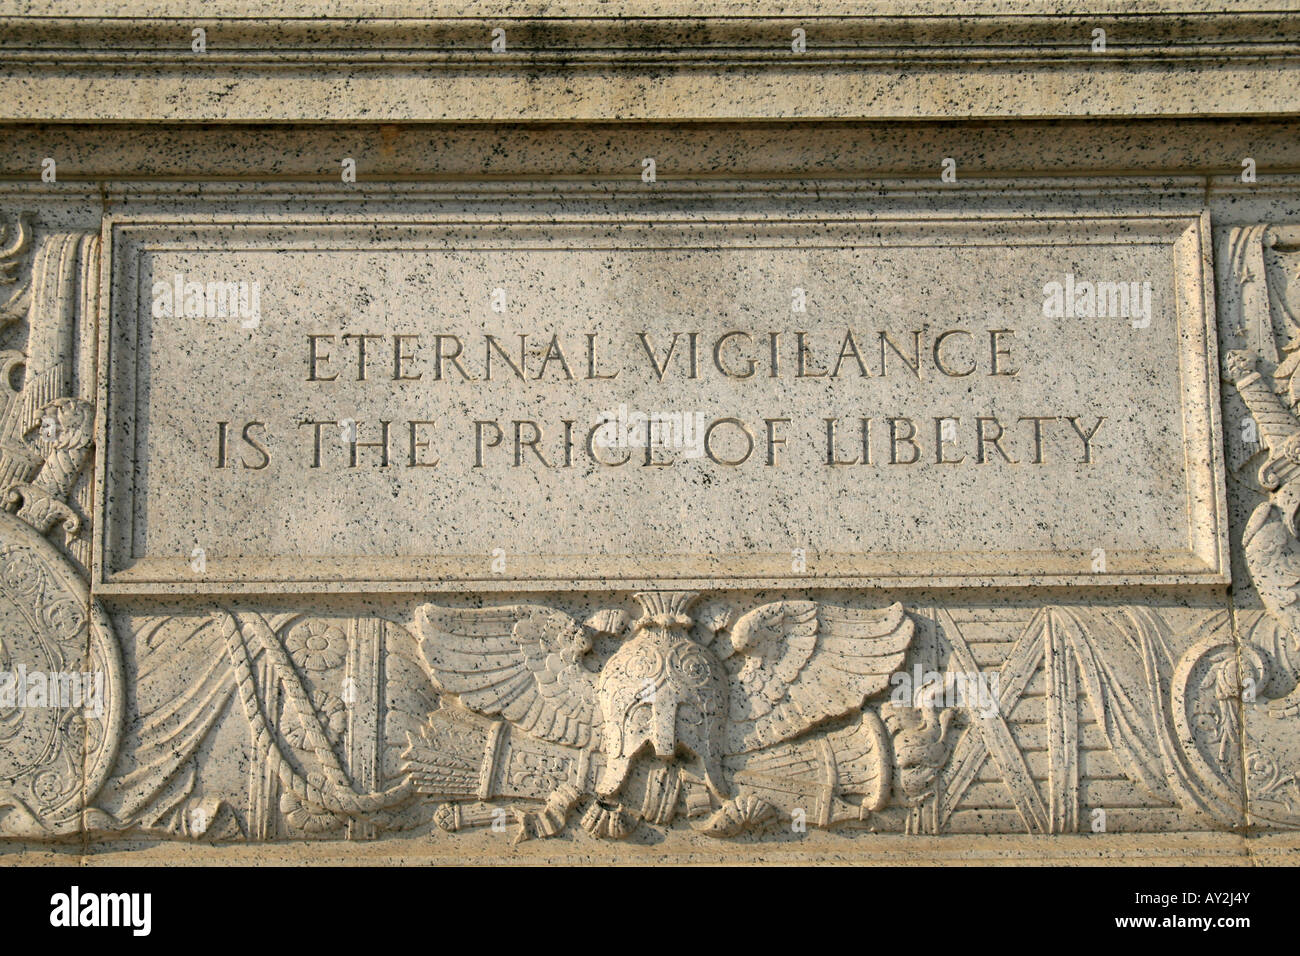 "La vigilance éternelle est le prix de la liberté : la gravure sur l'édifice des Archives nationales de Washington DC. Banque D'Images